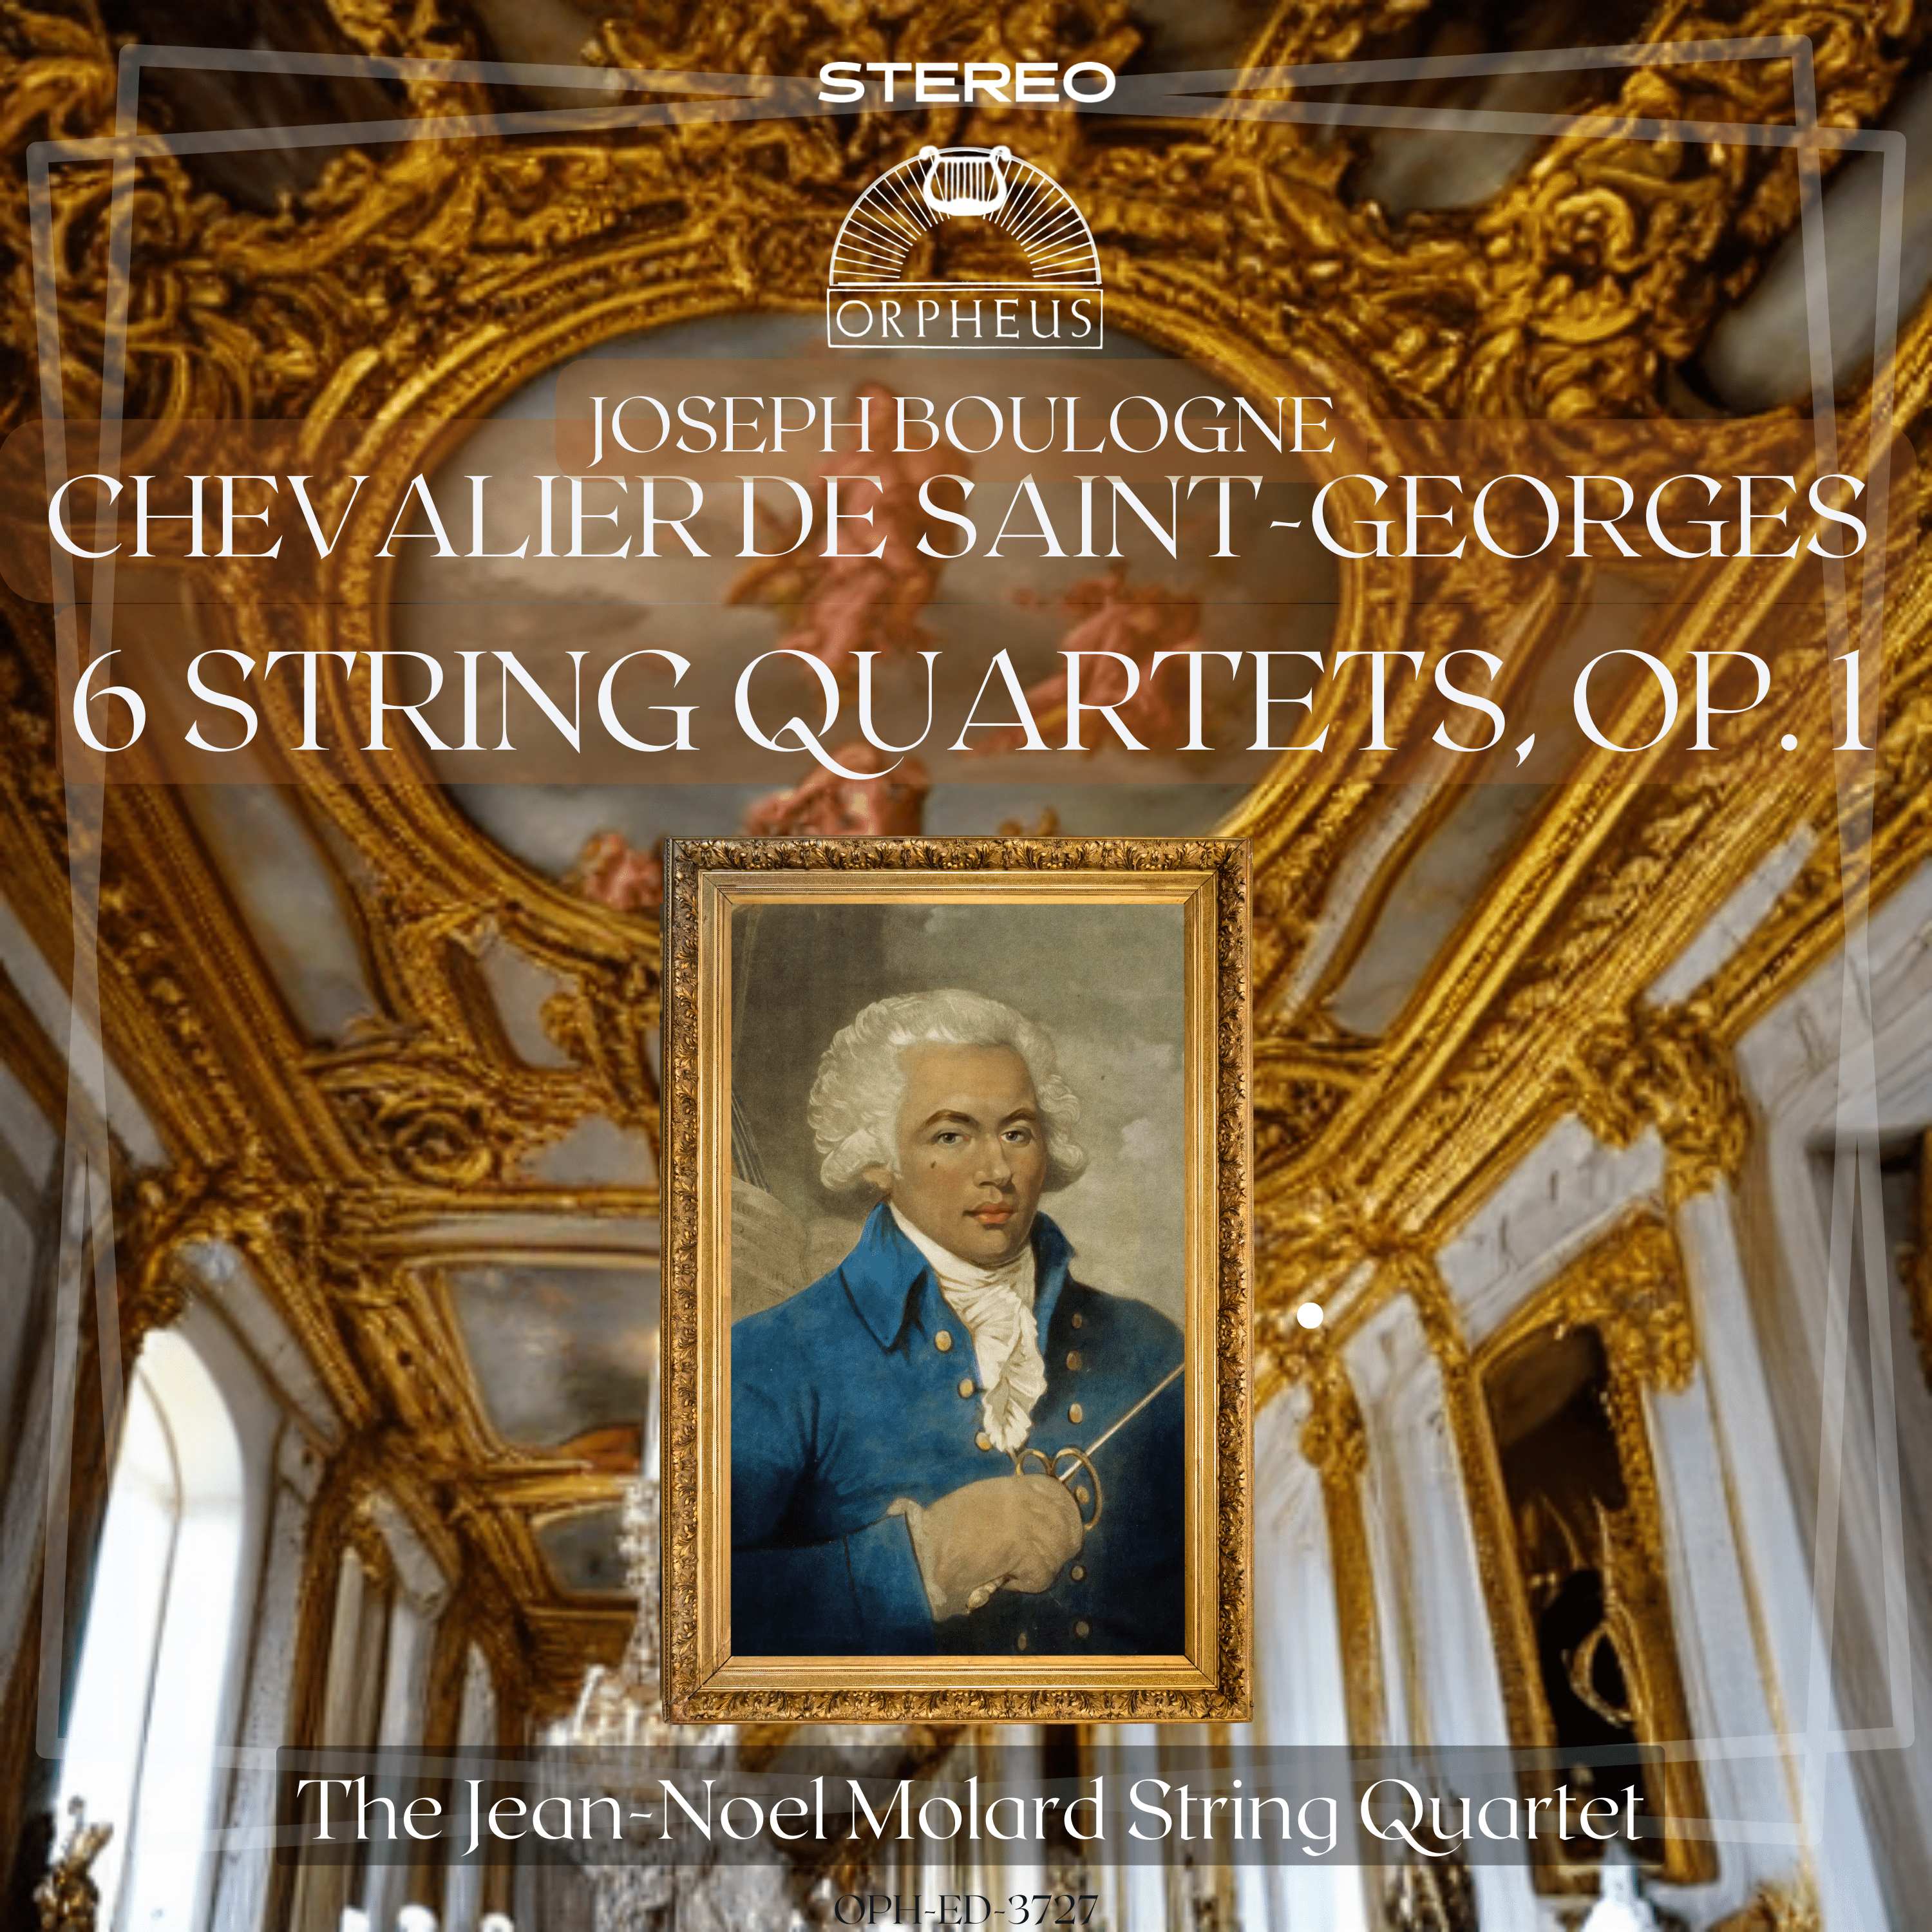 Boulogne (Chevalier de Saint-Georges): 6 String Quartets, Op. 1